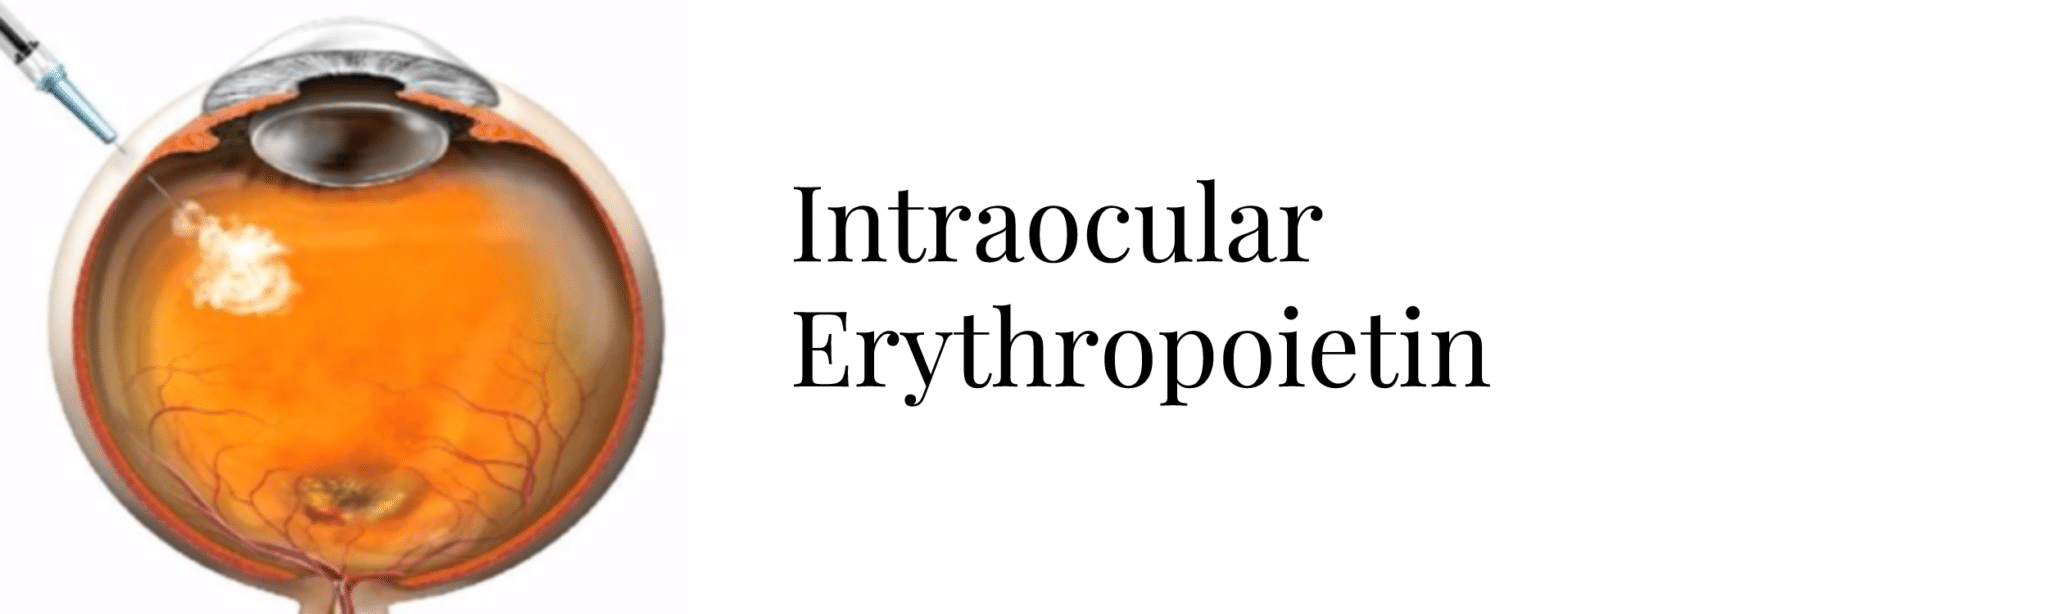 intraocular erythropoietin header